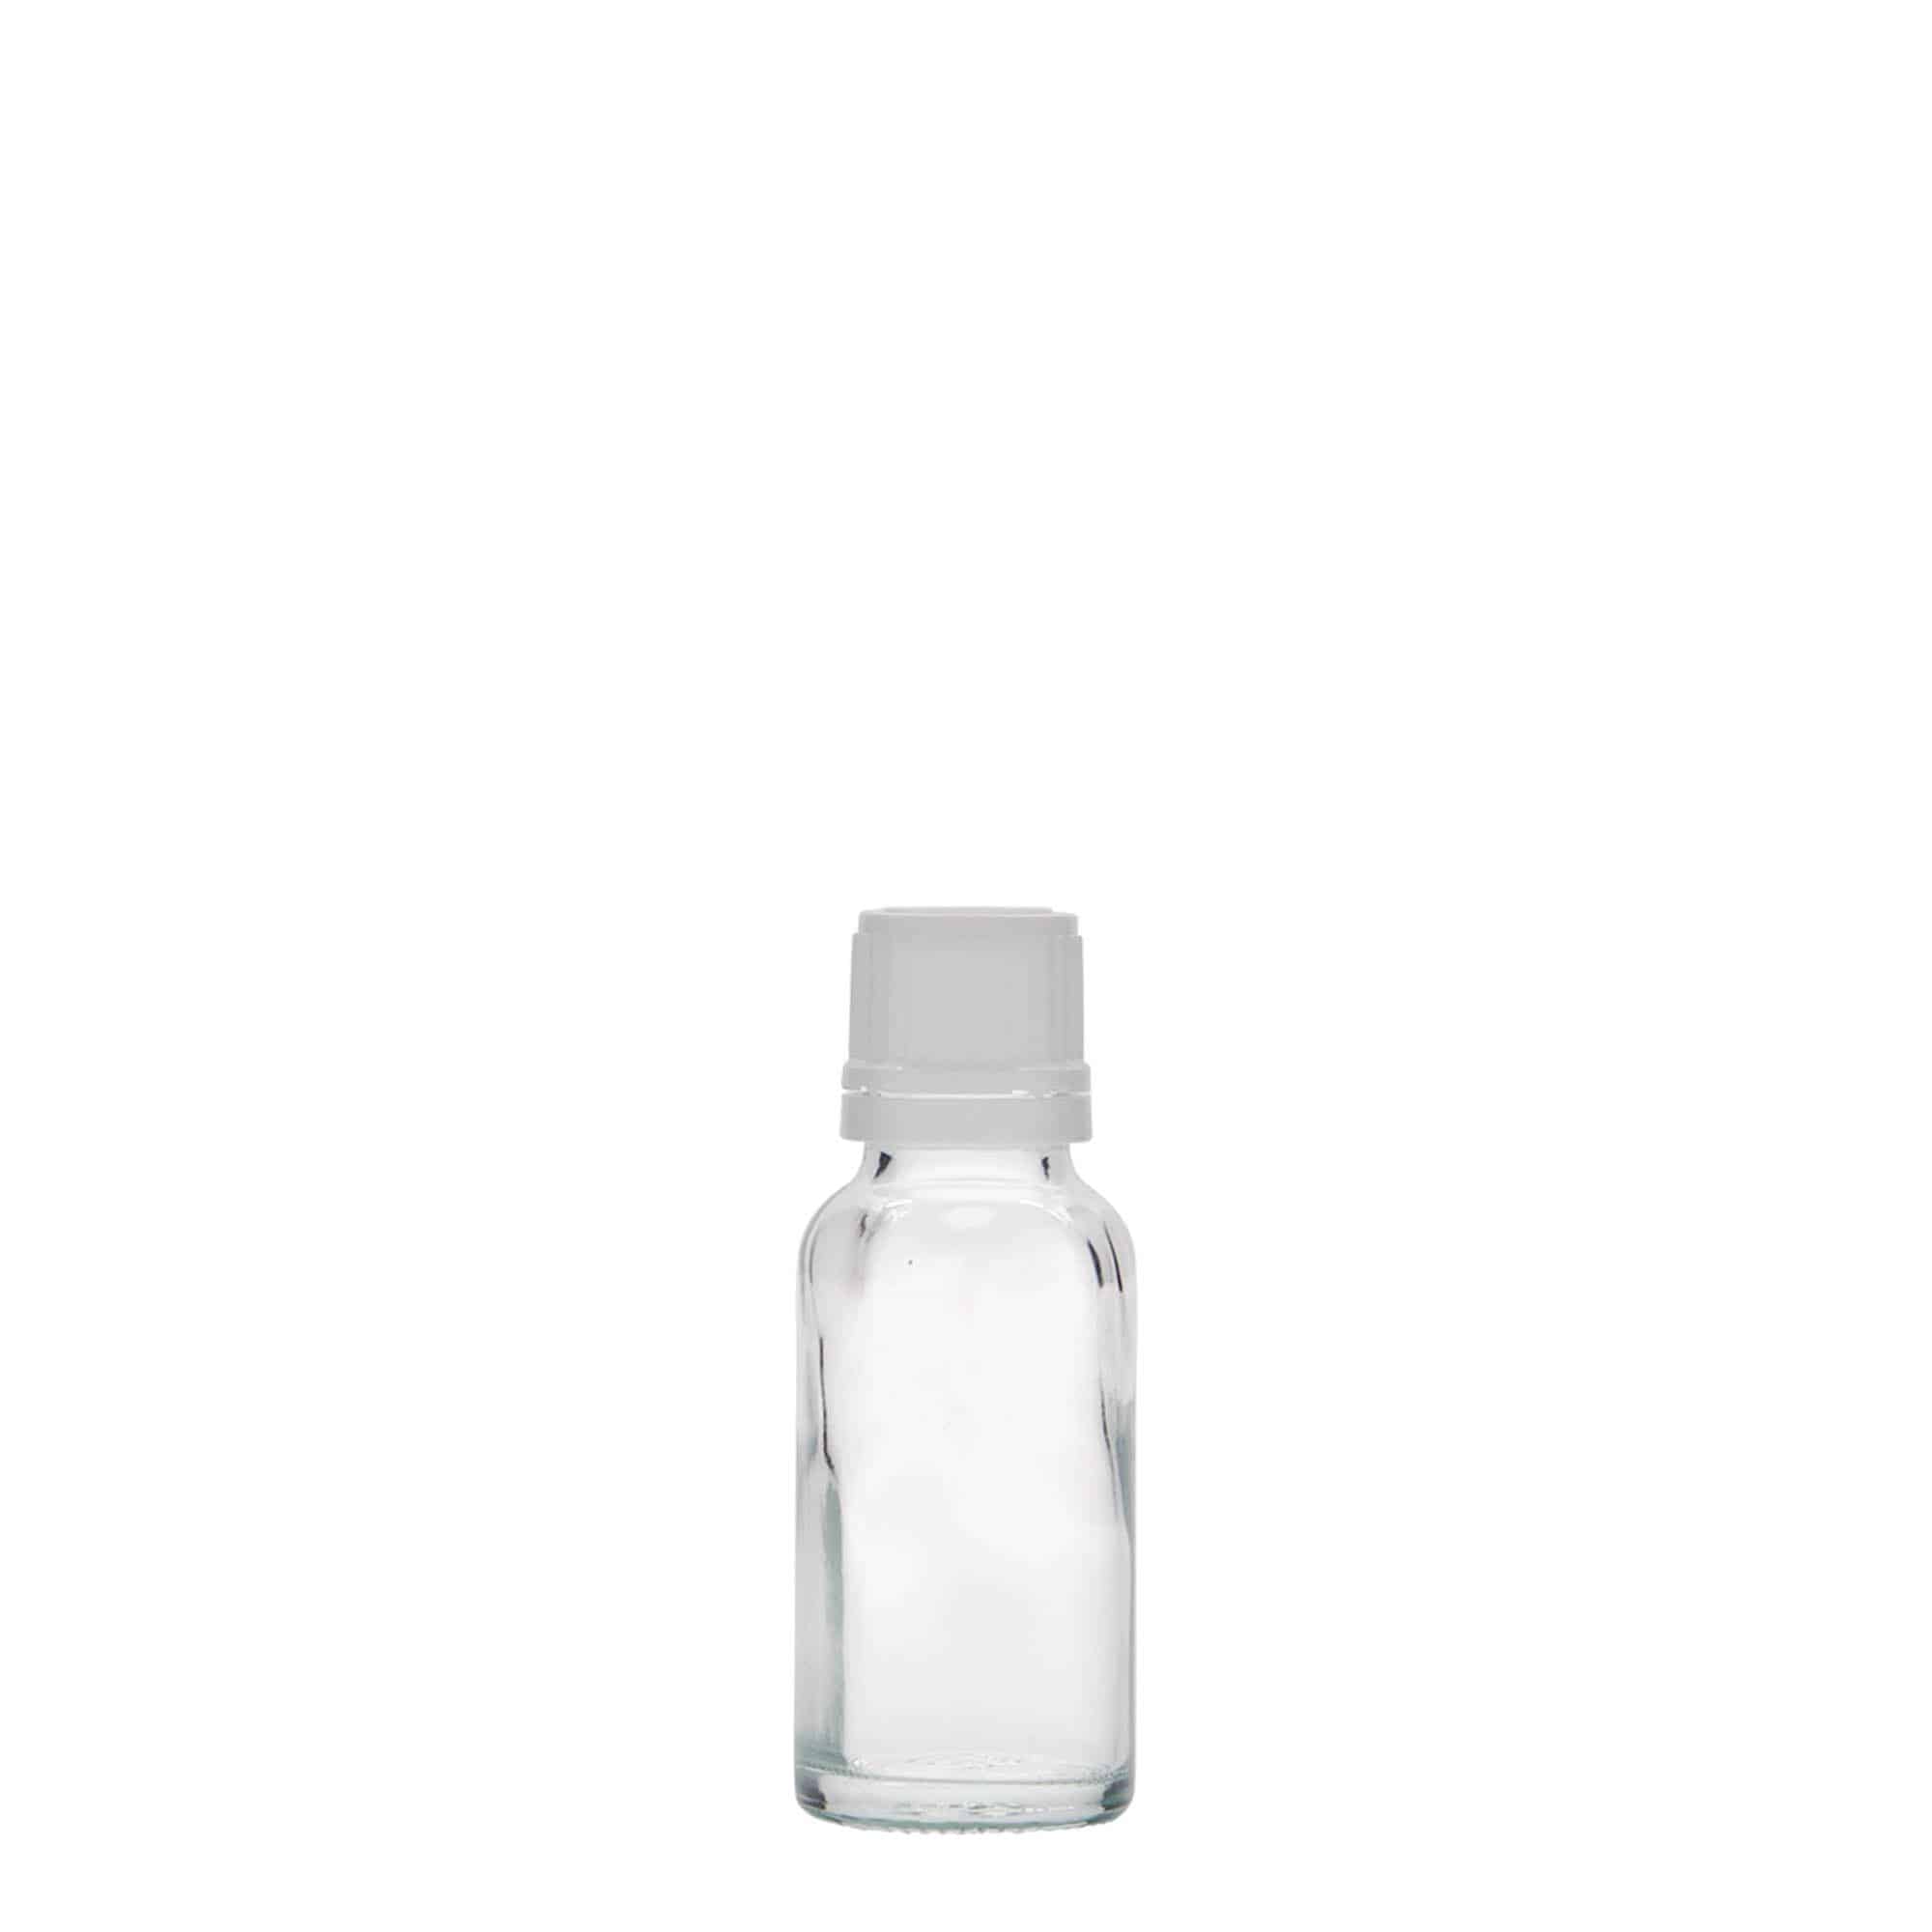 20 ml medicinflaske, glas, åbning: DIN 18